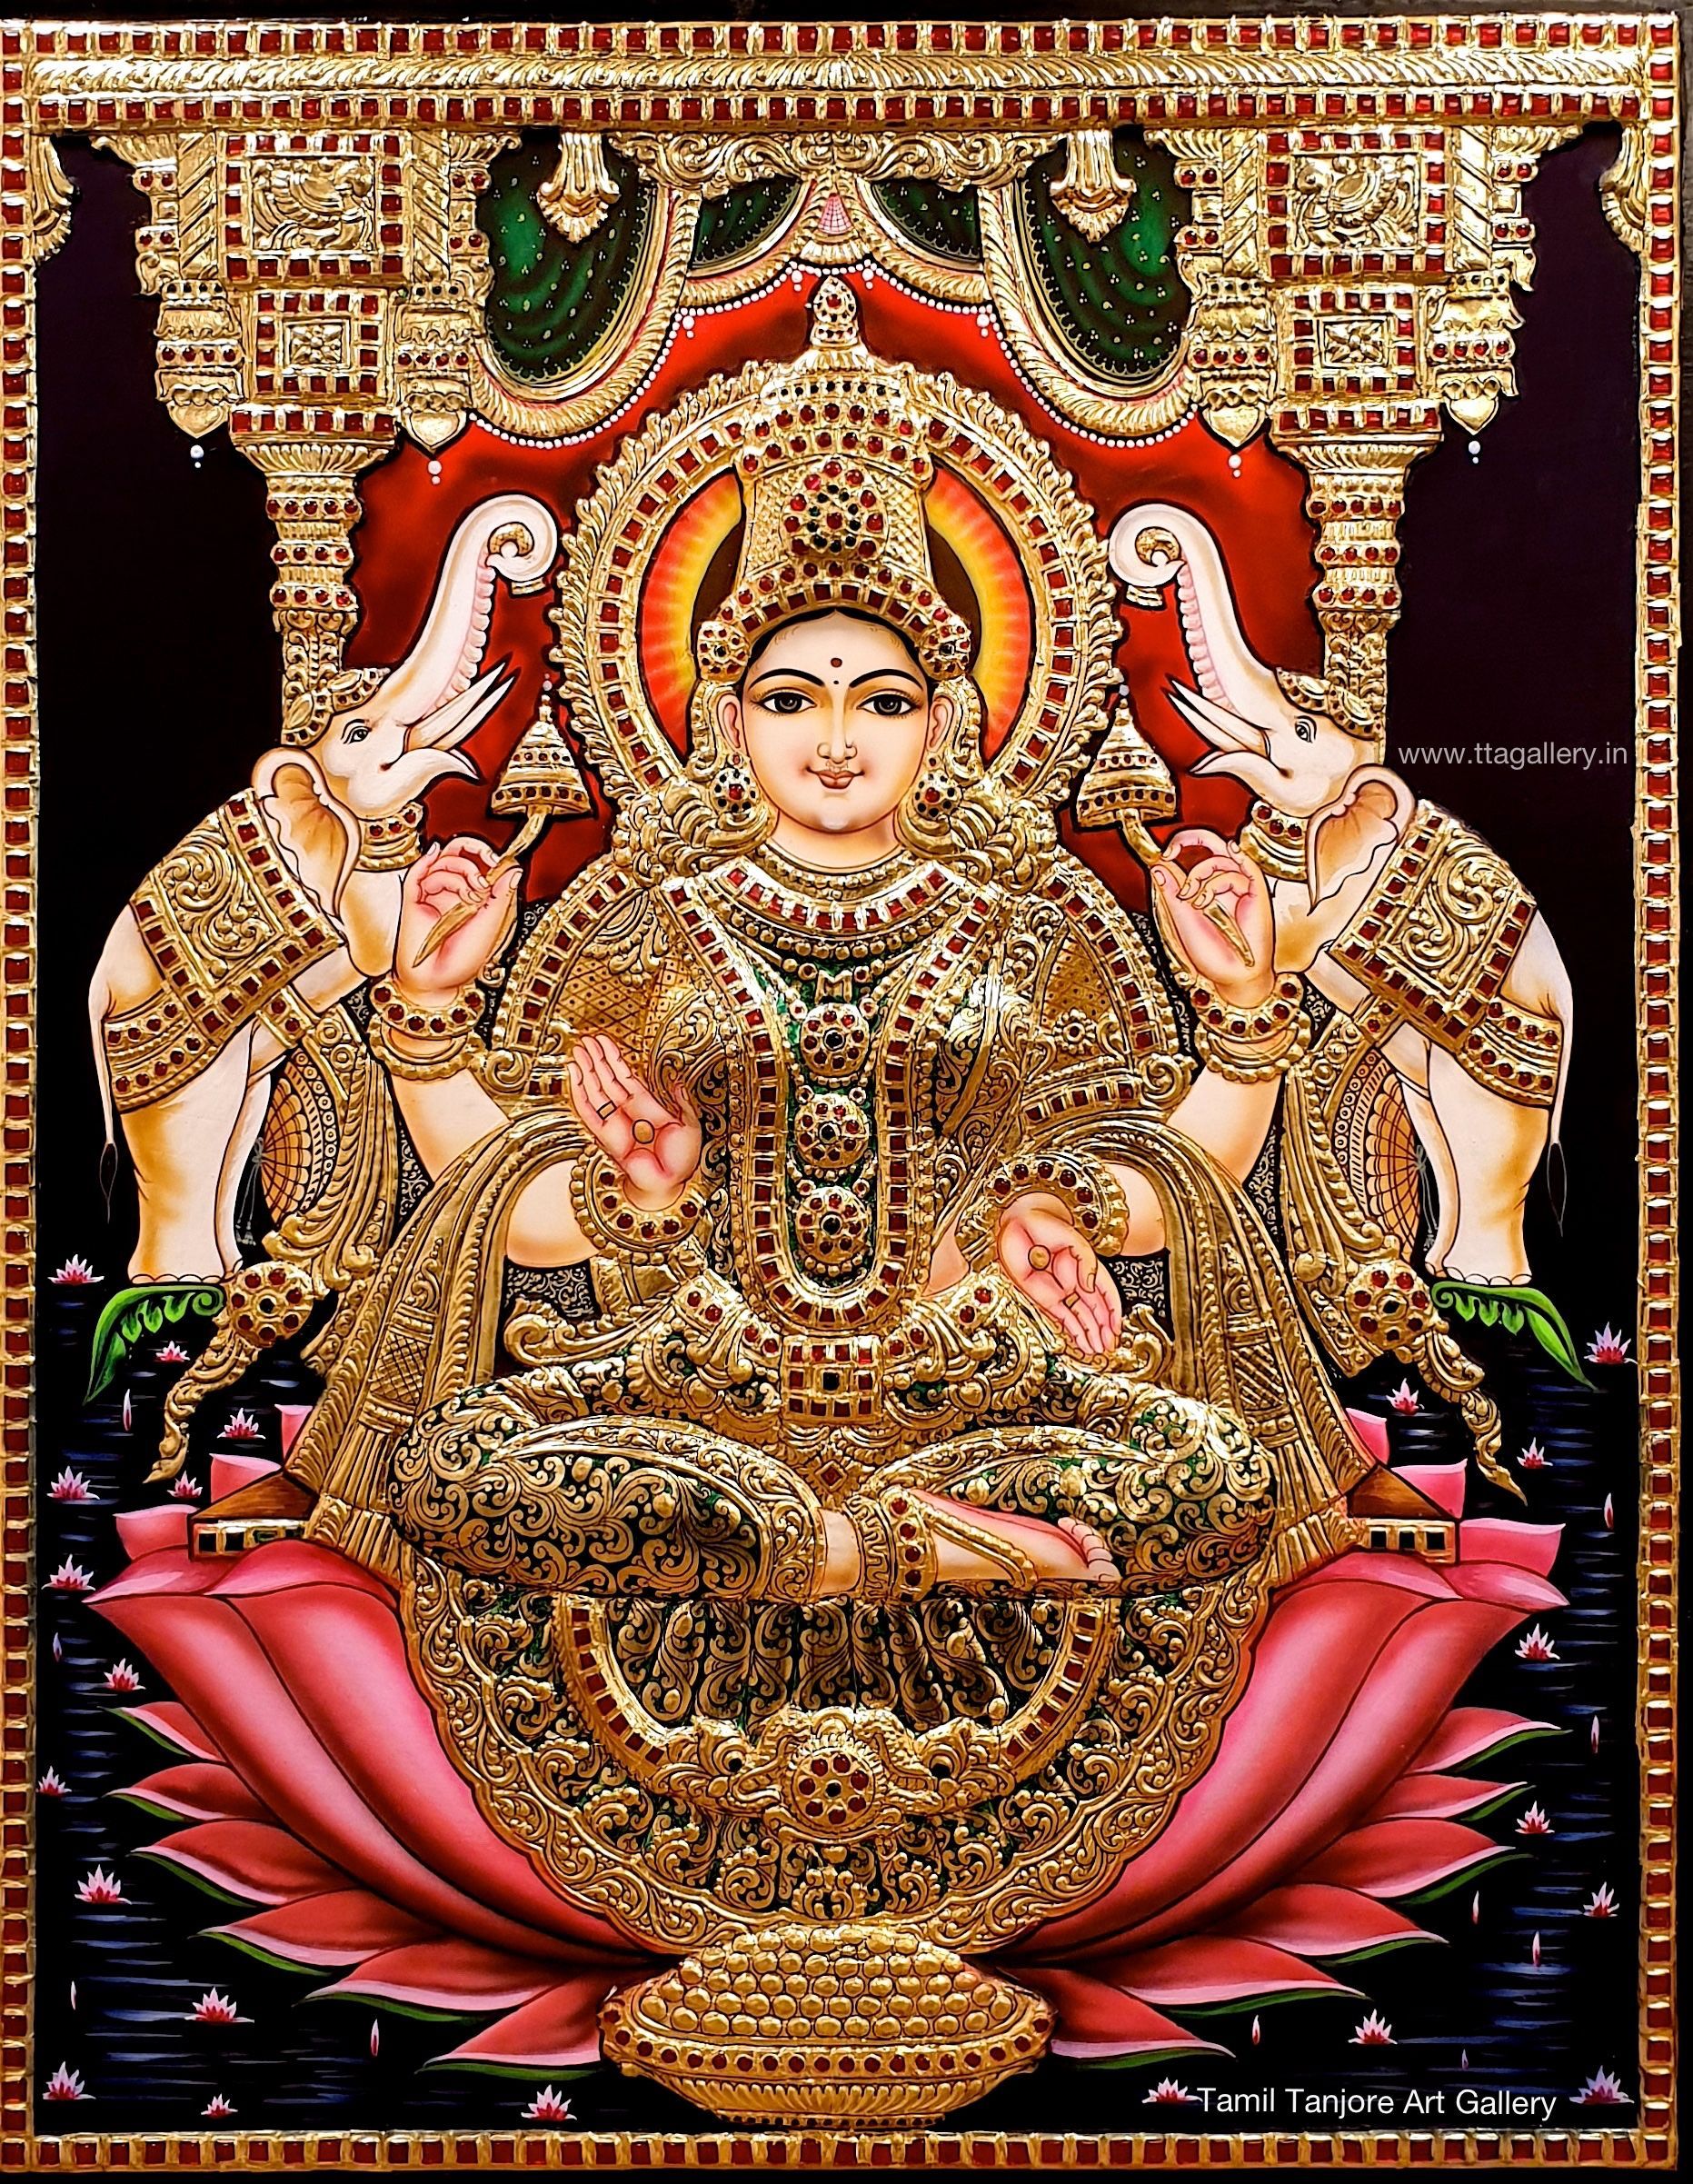 Tanjore painting, Tanjavore painting, Gajalakshmi, devi Lakshmi